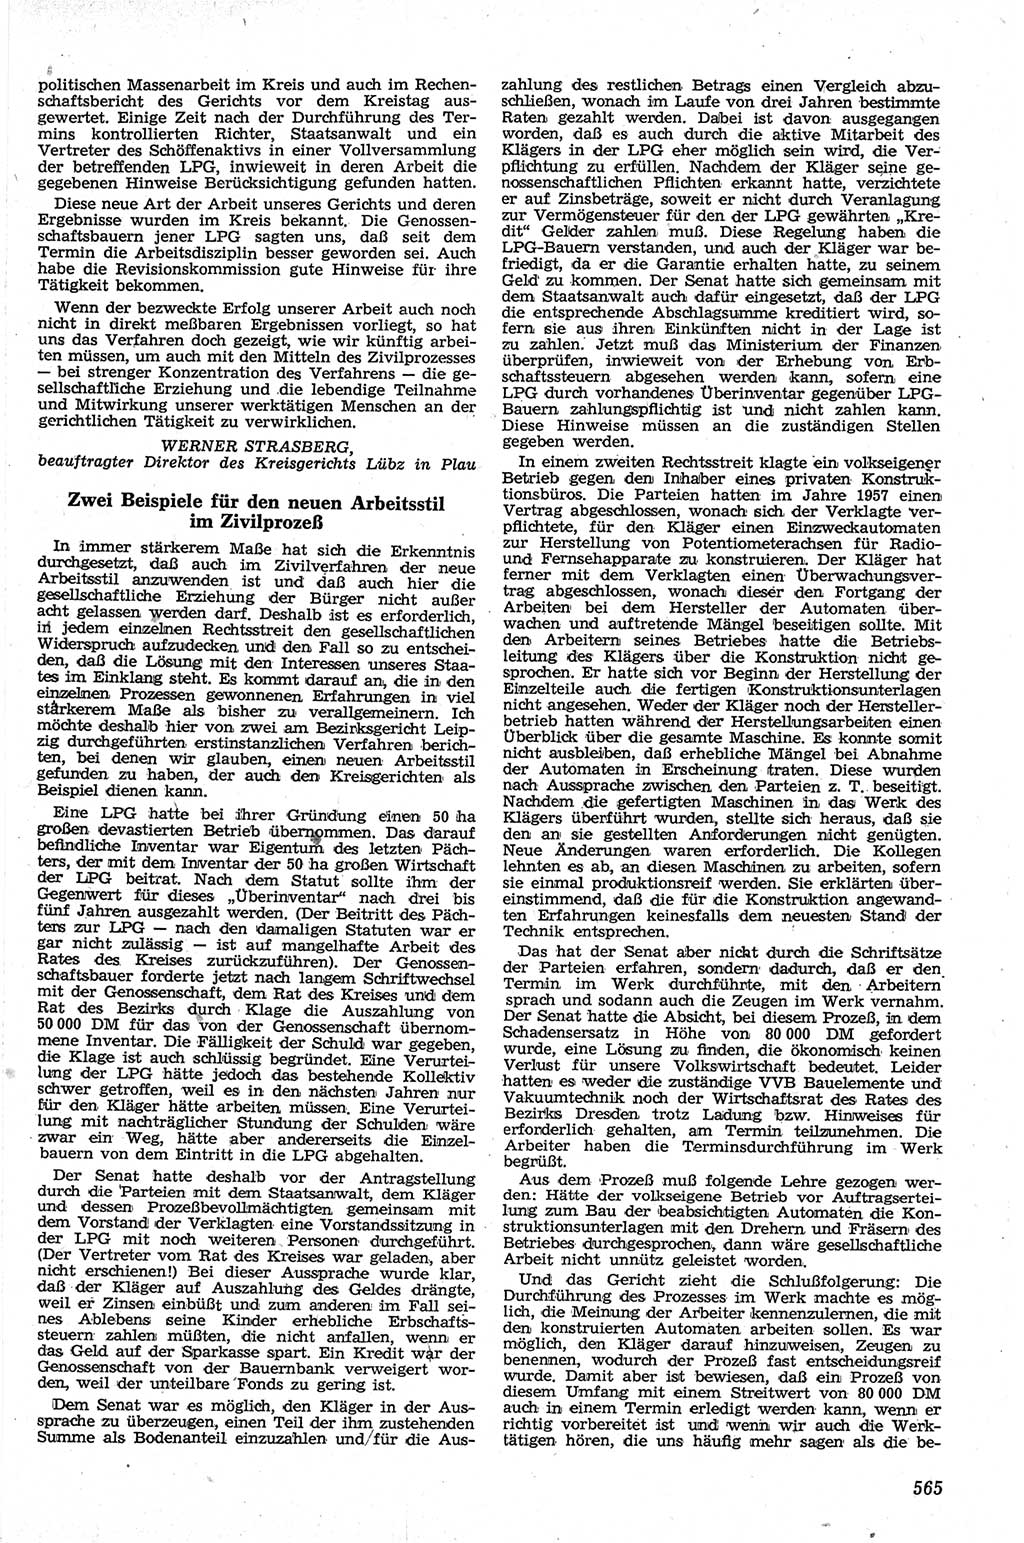 Neue Justiz (NJ), Zeitschrift für Recht und Rechtswissenschaft [Deutsche Demokratische Republik (DDR)], 13. Jahrgang 1959, Seite 565 (NJ DDR 1959, S. 565)